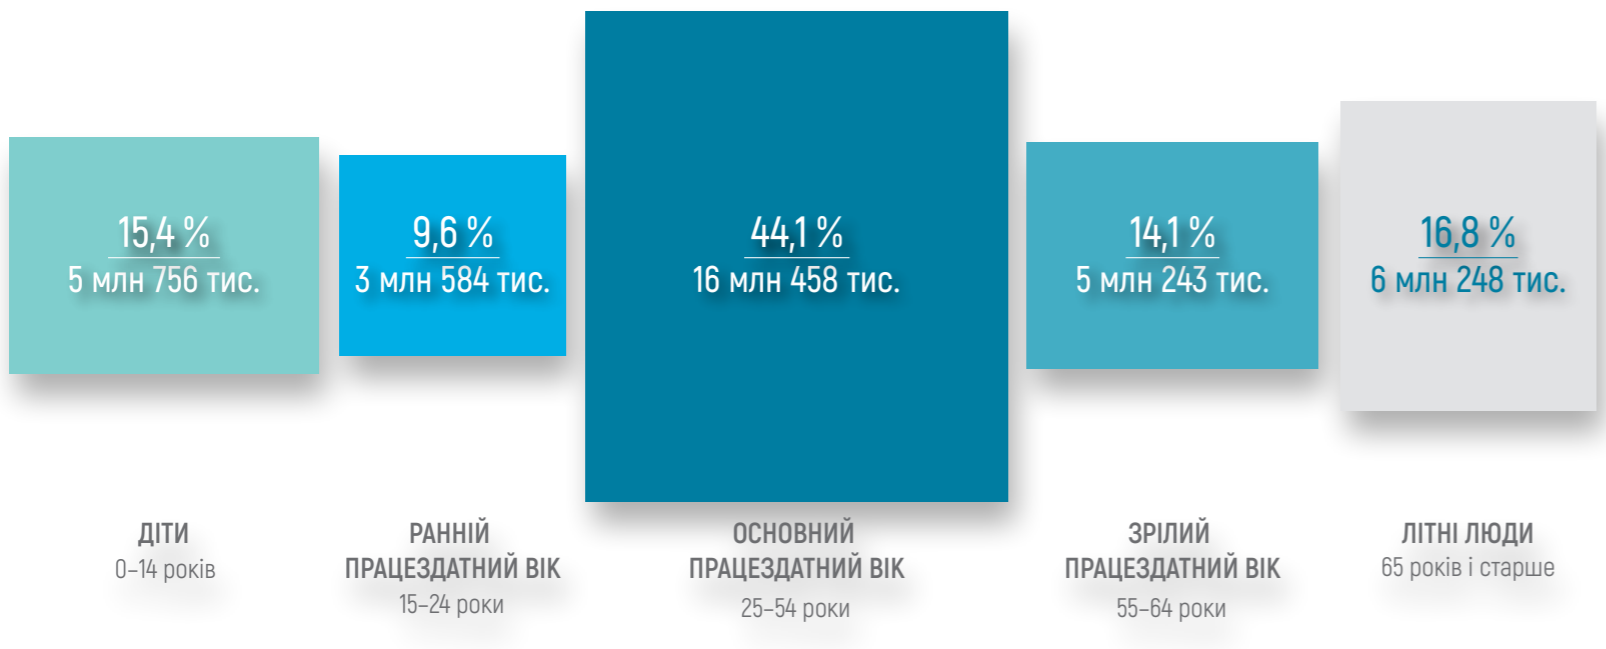 трудоспособное население Украины